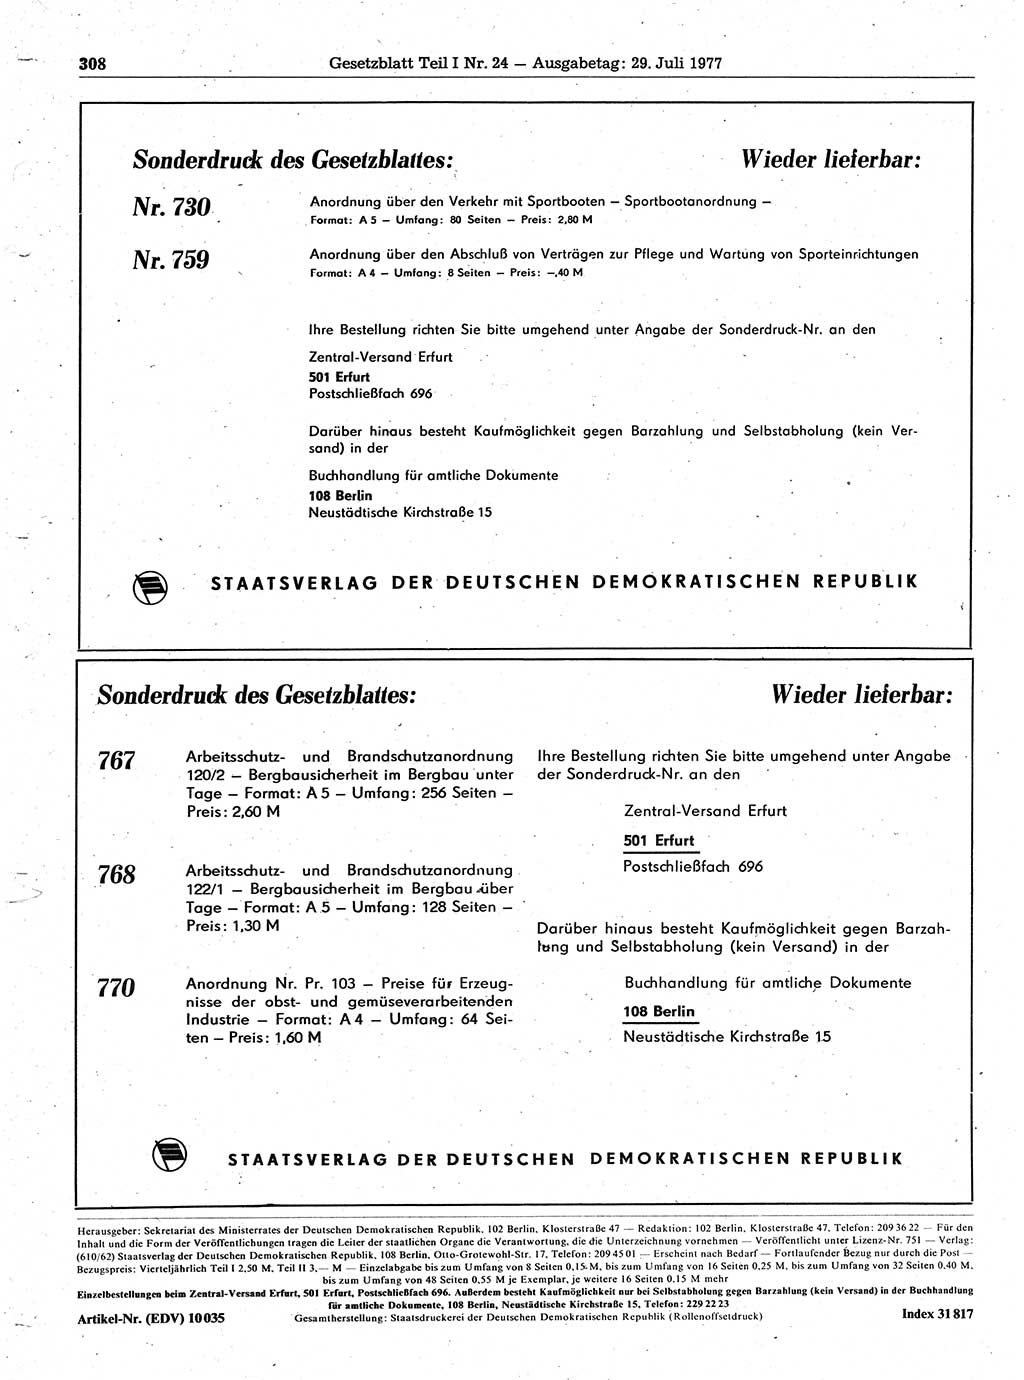 Gesetzblatt (GBl.) der Deutschen Demokratischen Republik (DDR) Teil Ⅰ 1977, Seite 308 (GBl. DDR Ⅰ 1977, S. 308)